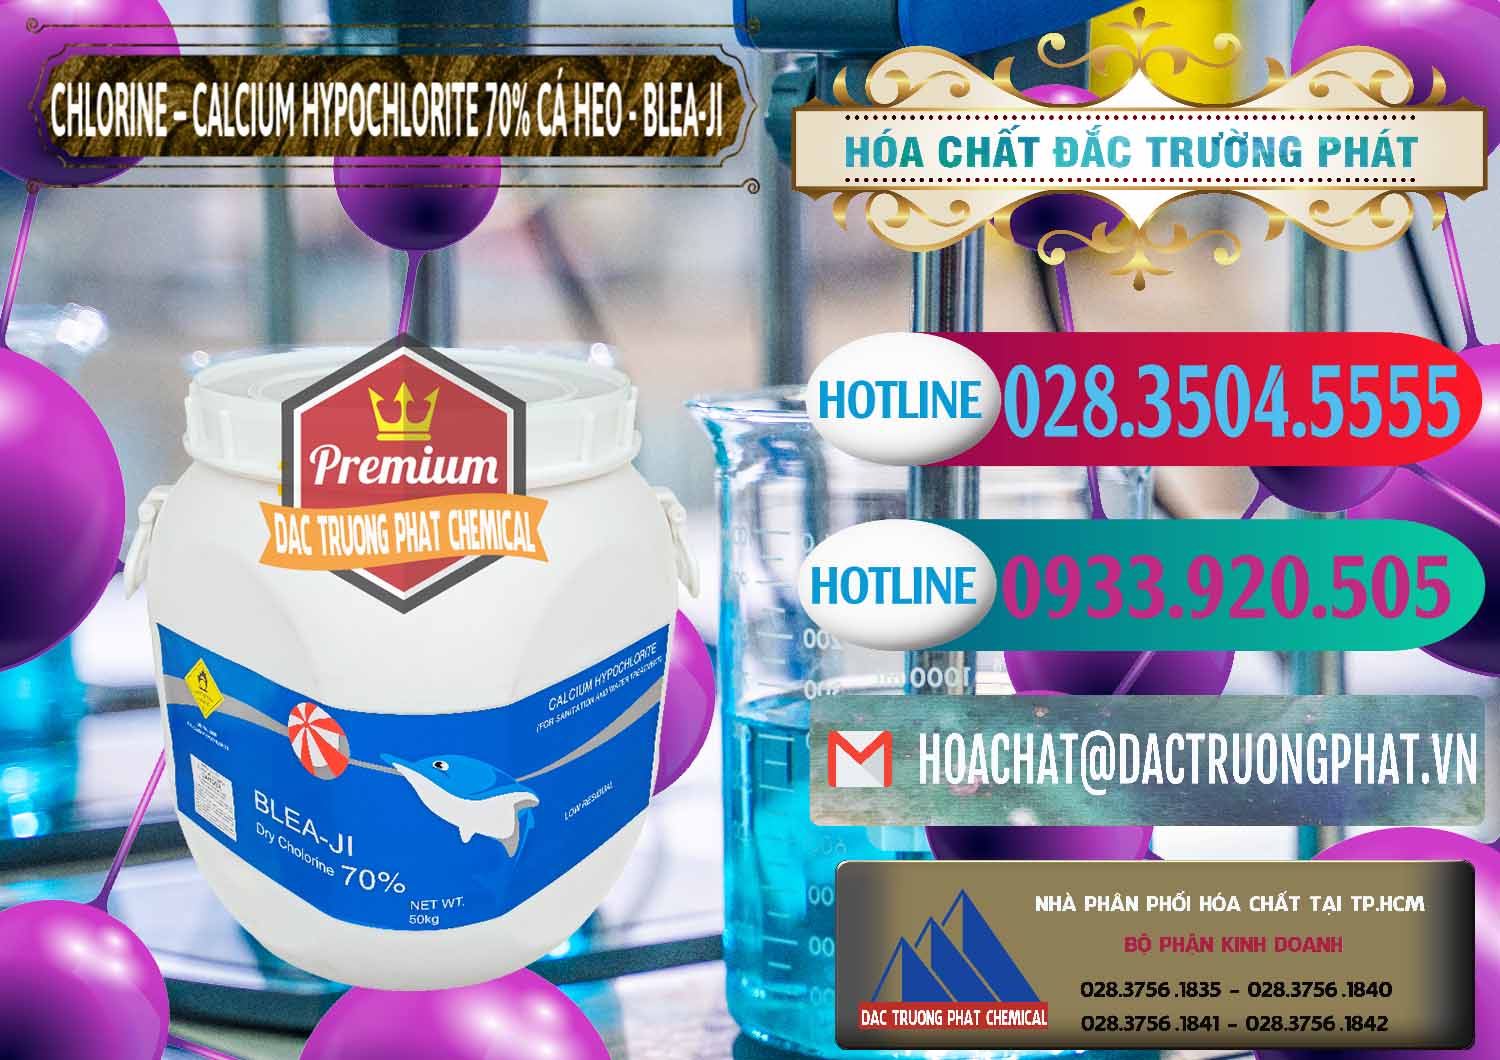 Nơi chuyên cung cấp & bán Clorin - Chlorine Cá Heo 70% Blea-Ji Trung Quốc China - 0056 - Nơi chuyên phân phối _ kinh doanh hóa chất tại TP.HCM - truongphat.vn